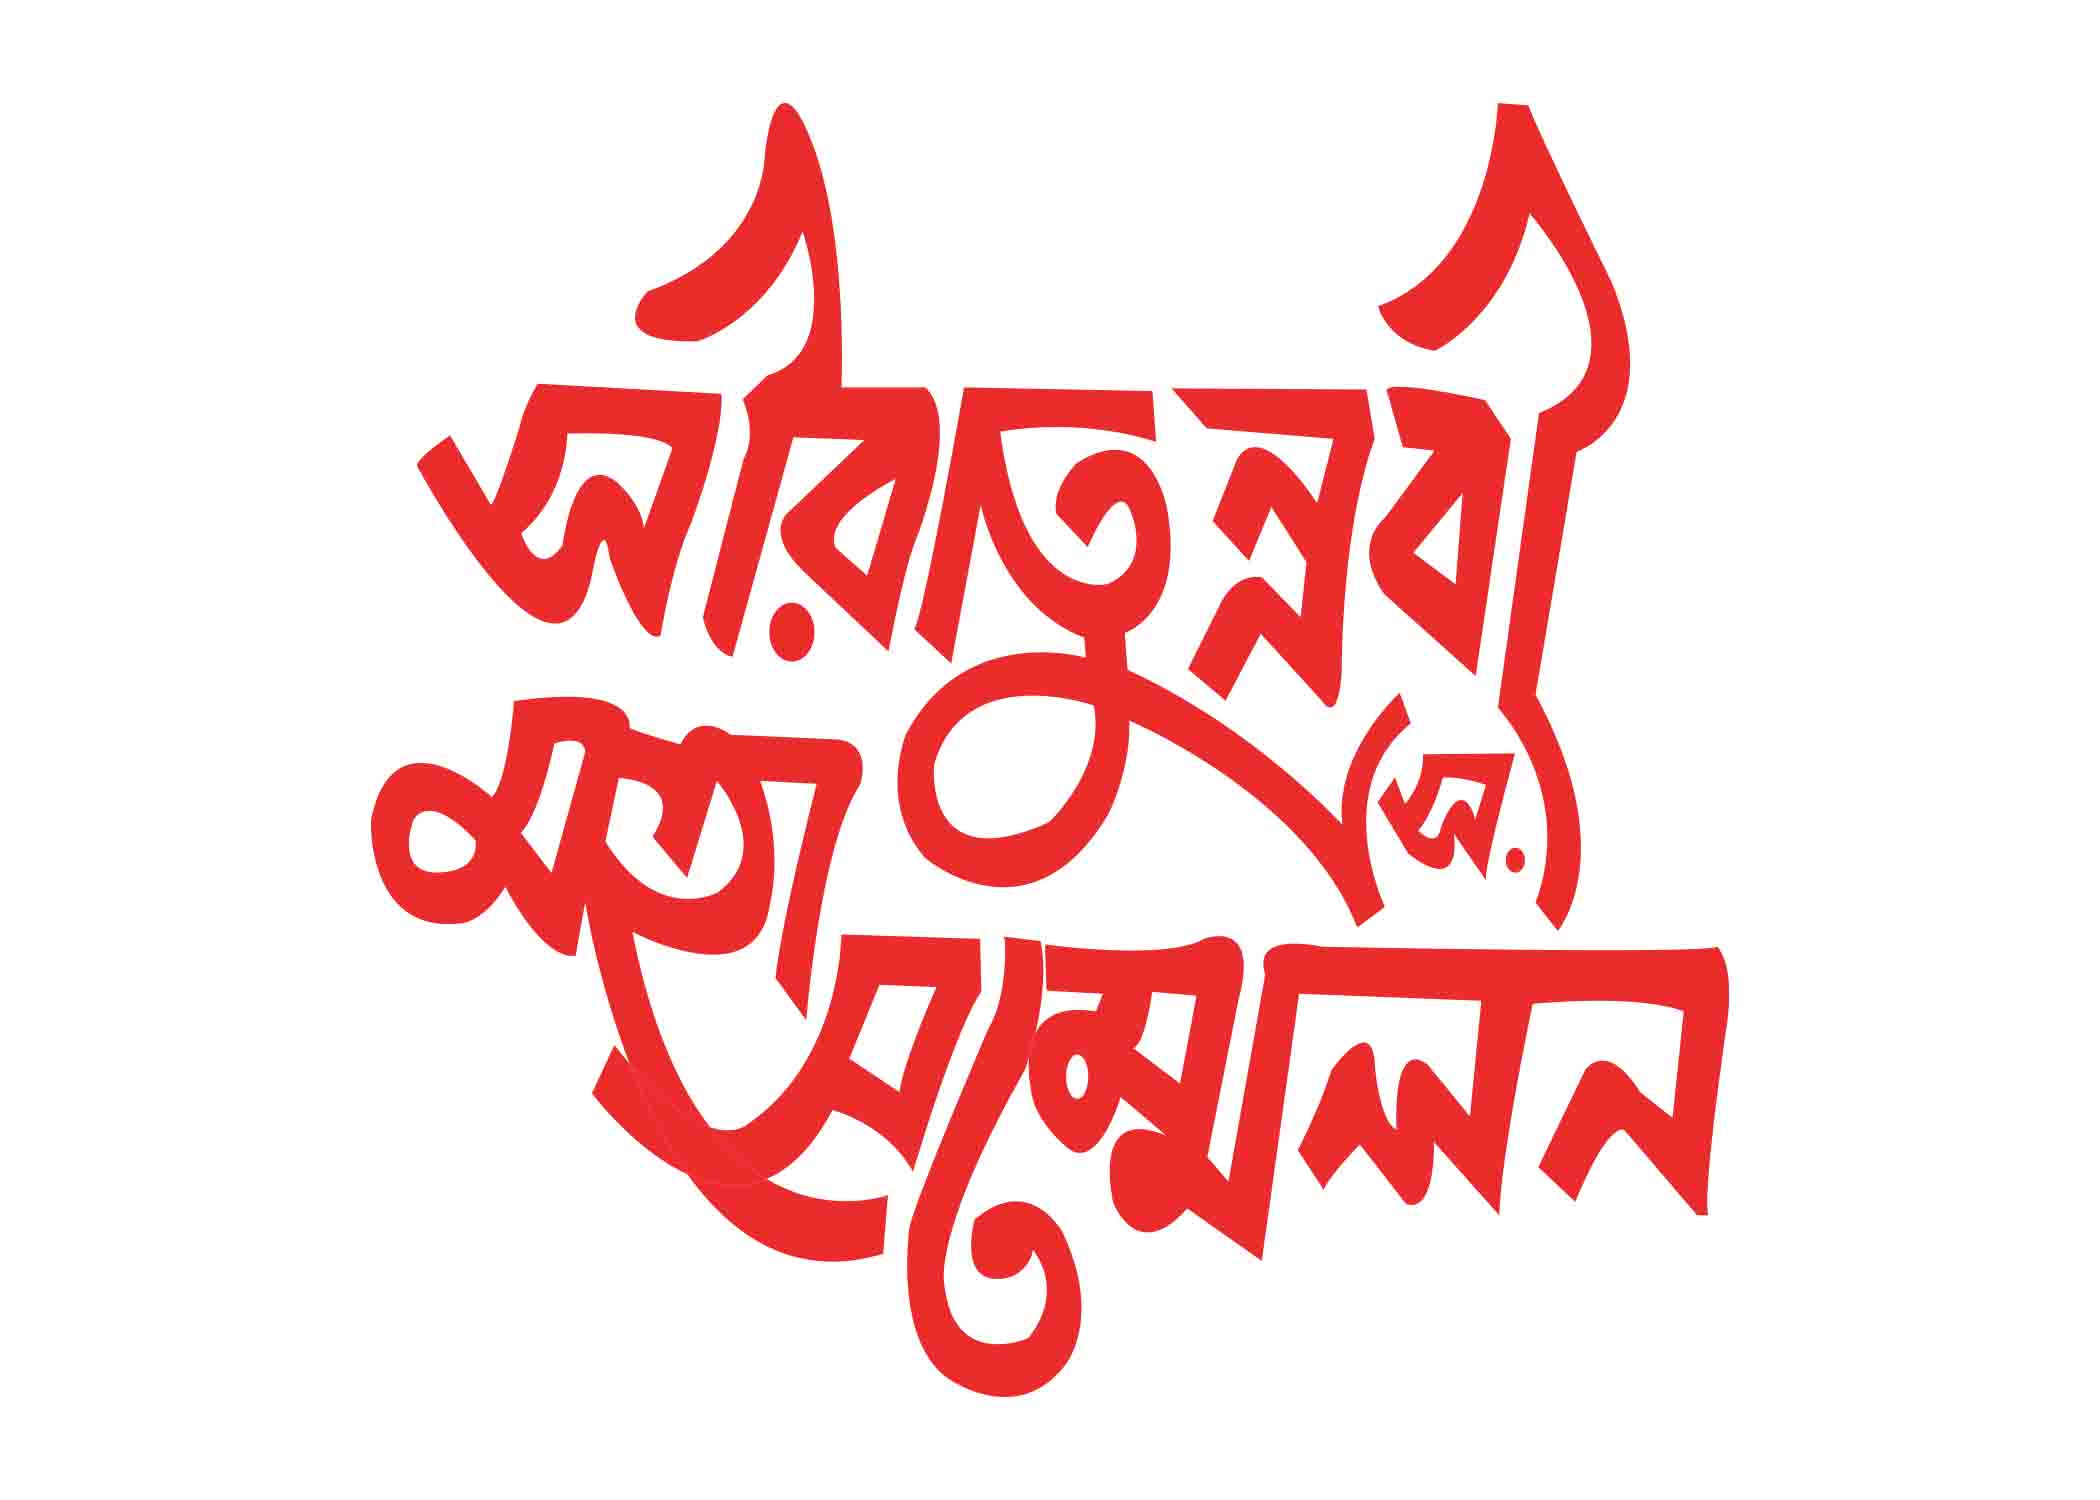 সীরাতুনবী মহাসম্মেলন টাইপোগ্রাফি । Bangla Typography PNG